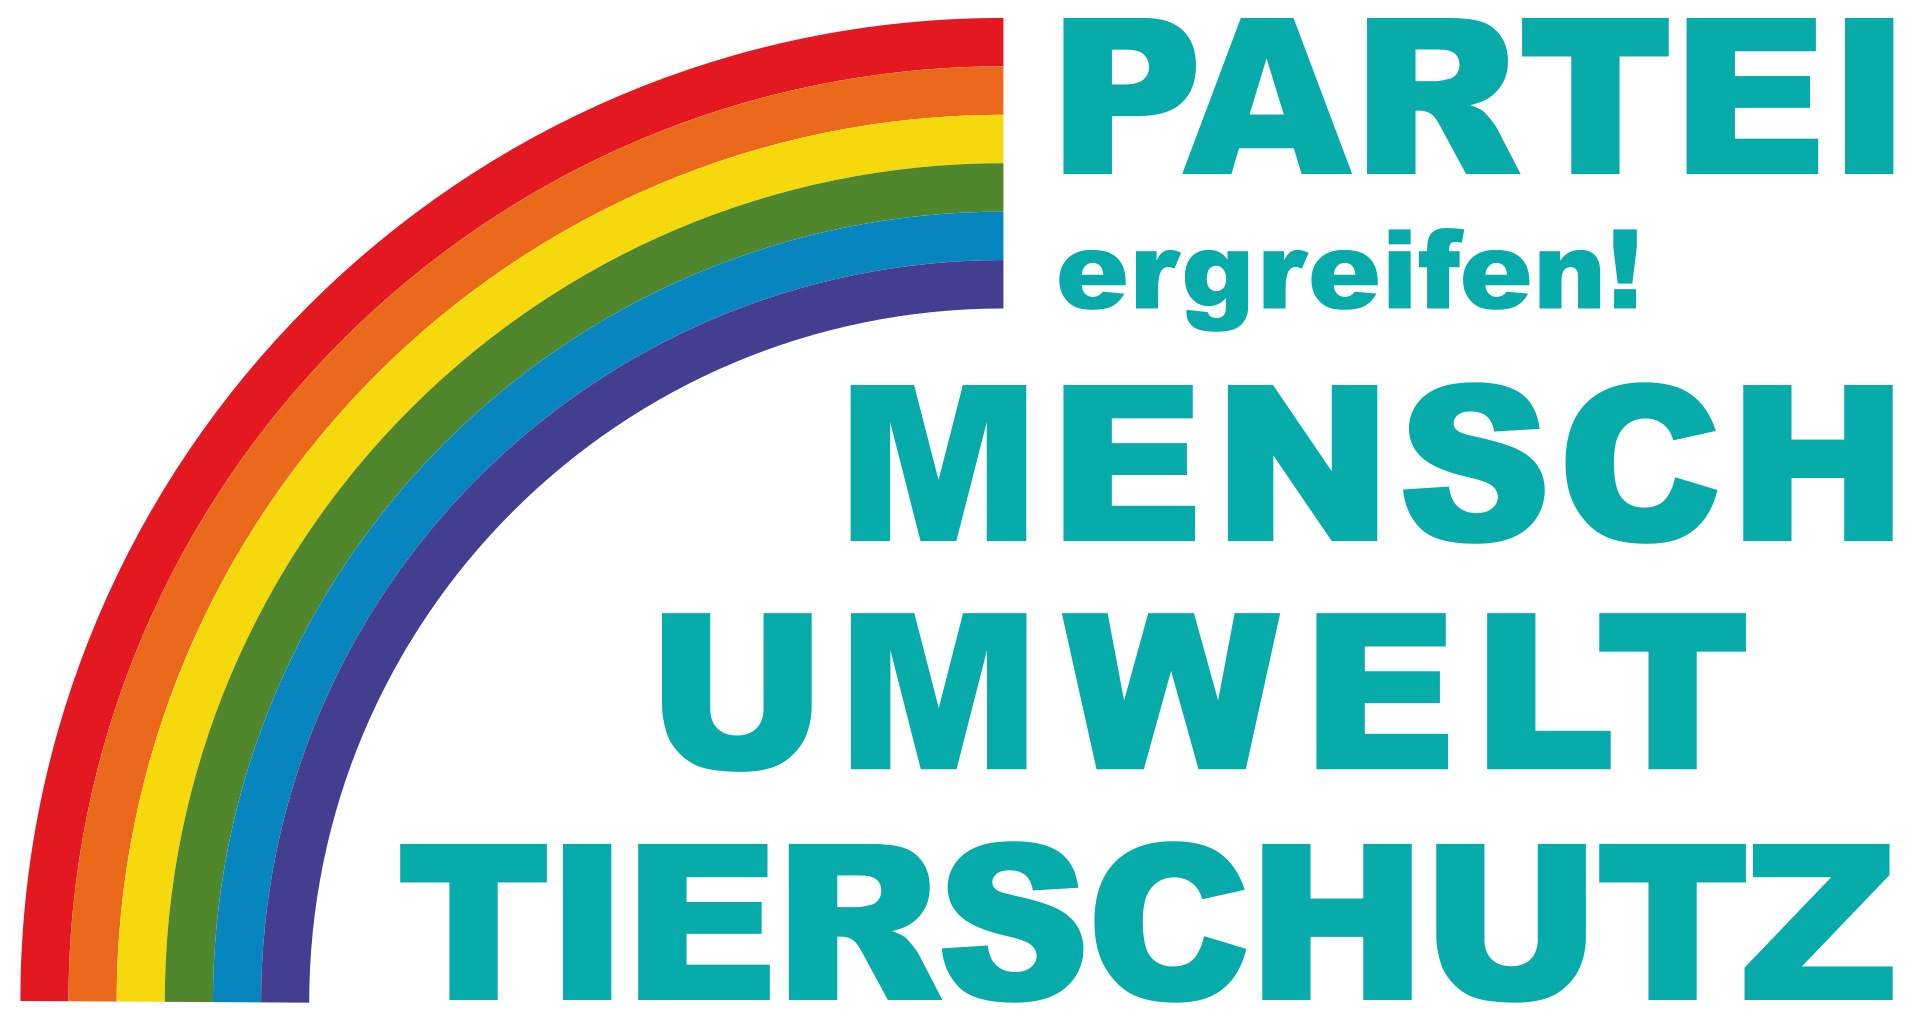 Logo der Partei Tierschutzpartei